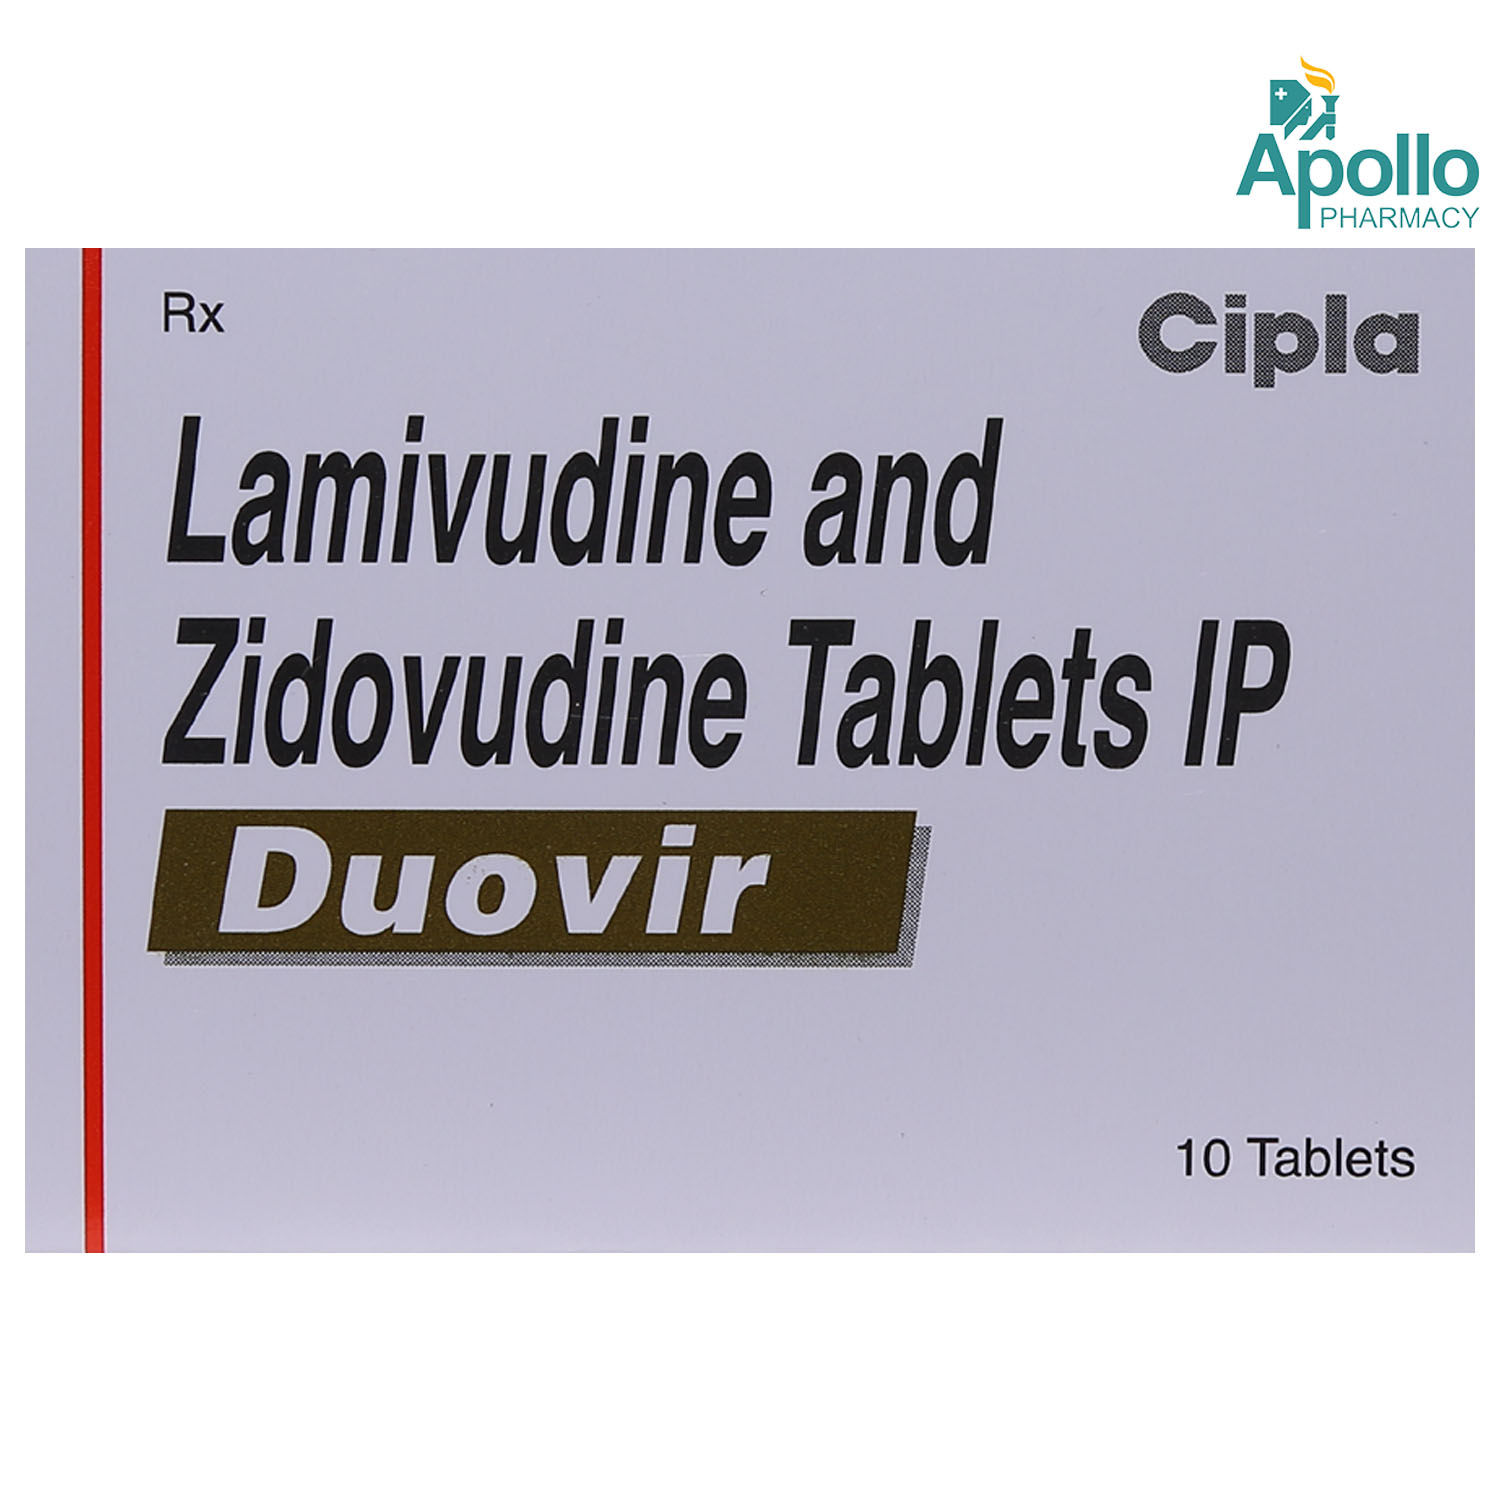 Buy Duovir Tablet 10's Online